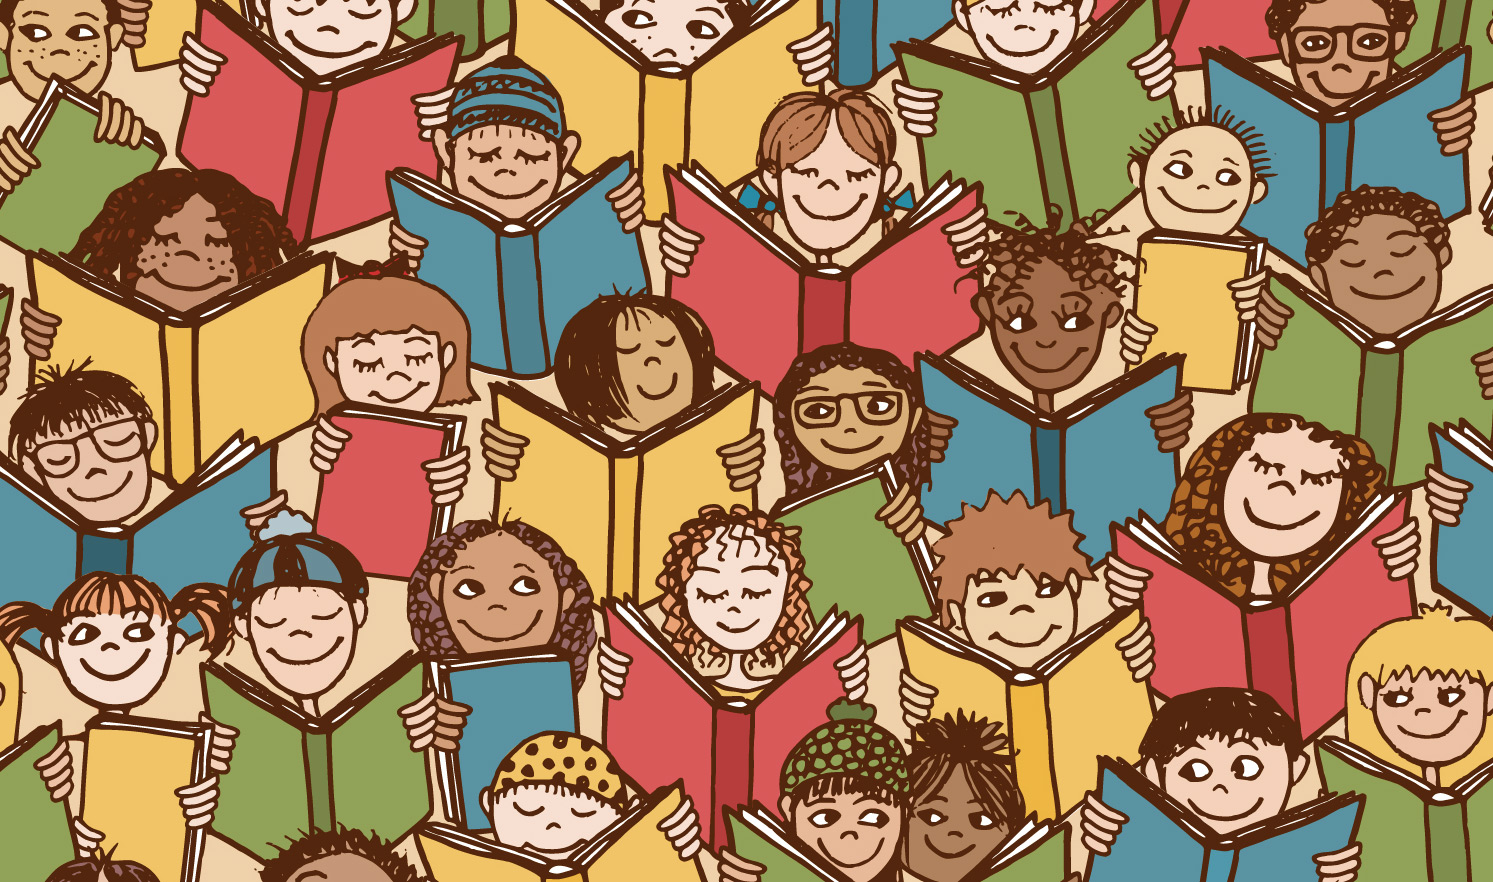 Diversity of children readers